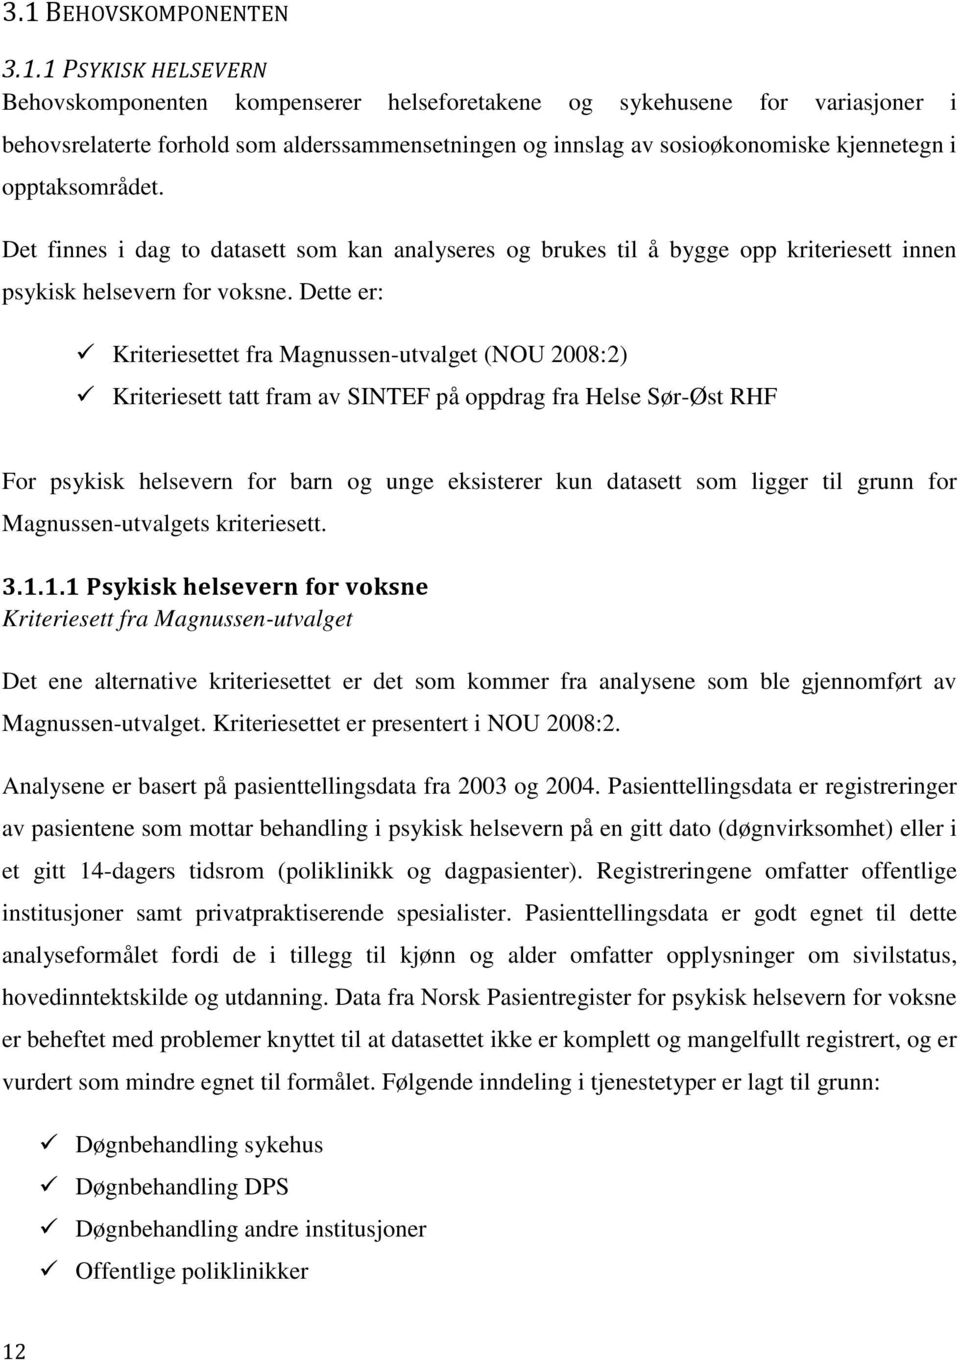 Dette er: Kriteriesettet fra Magnussen-utvalget (NOU 2008:2) Kriteriesett tatt fram av SINTEF på oppdrag fra Helse Sør-Øst RHF For psykisk helsevern for barn og unge eksisterer kun datasett som